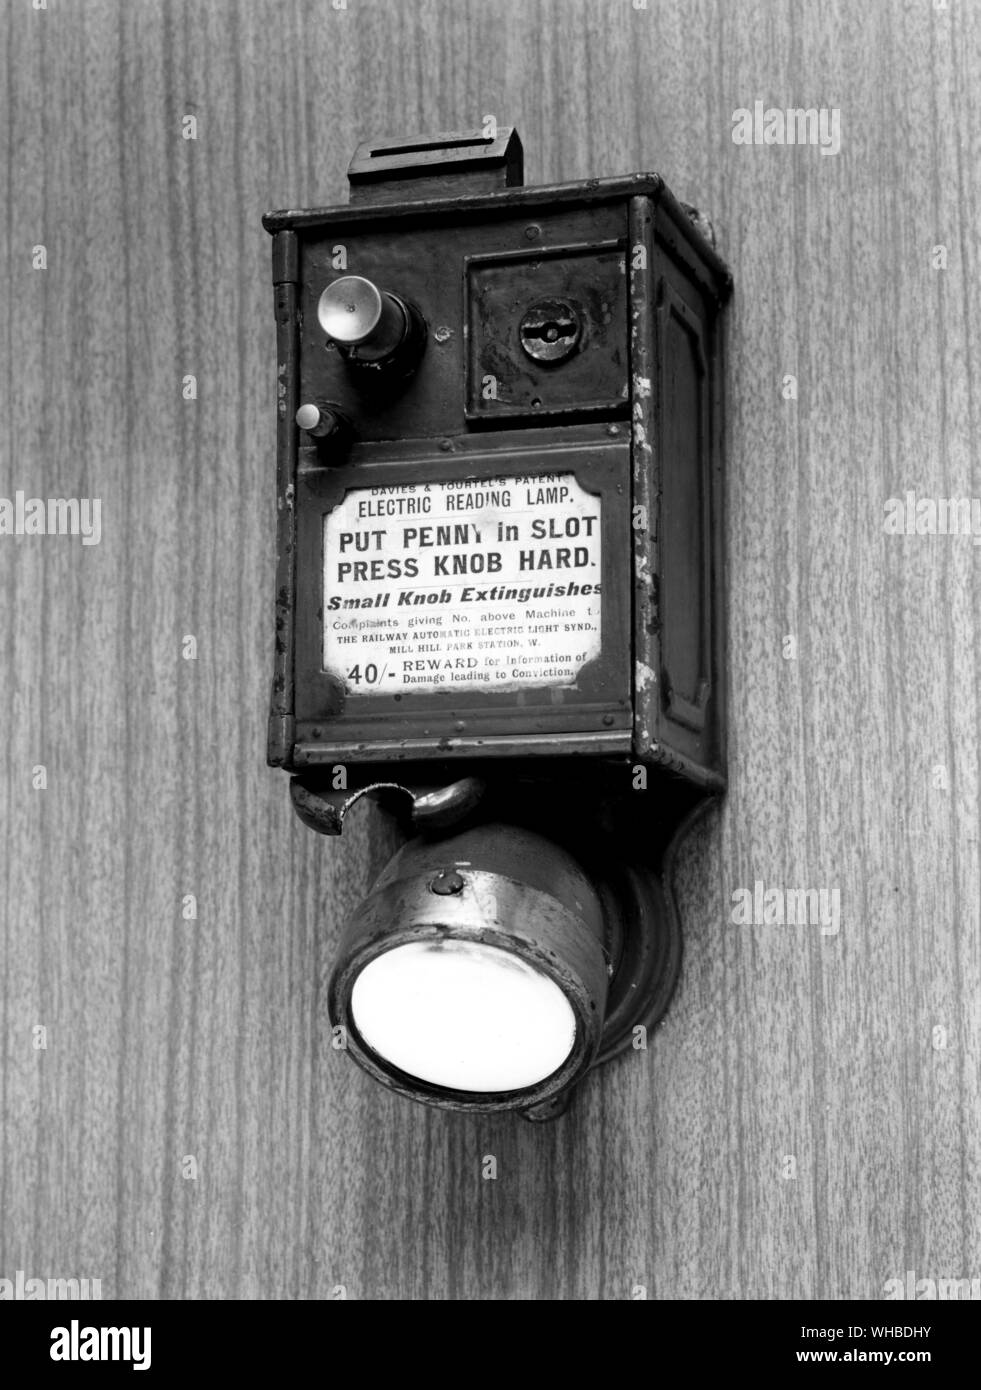 Davies und Tourtel die Patent elektrischen Leselampe - Penny in Schlitz - drücken Sie Knopf hard- kleinen Knopf löscht - 40 / - Belohnung für Informationen von Schäden verursachen, die zu Überzeugung. Stockfoto